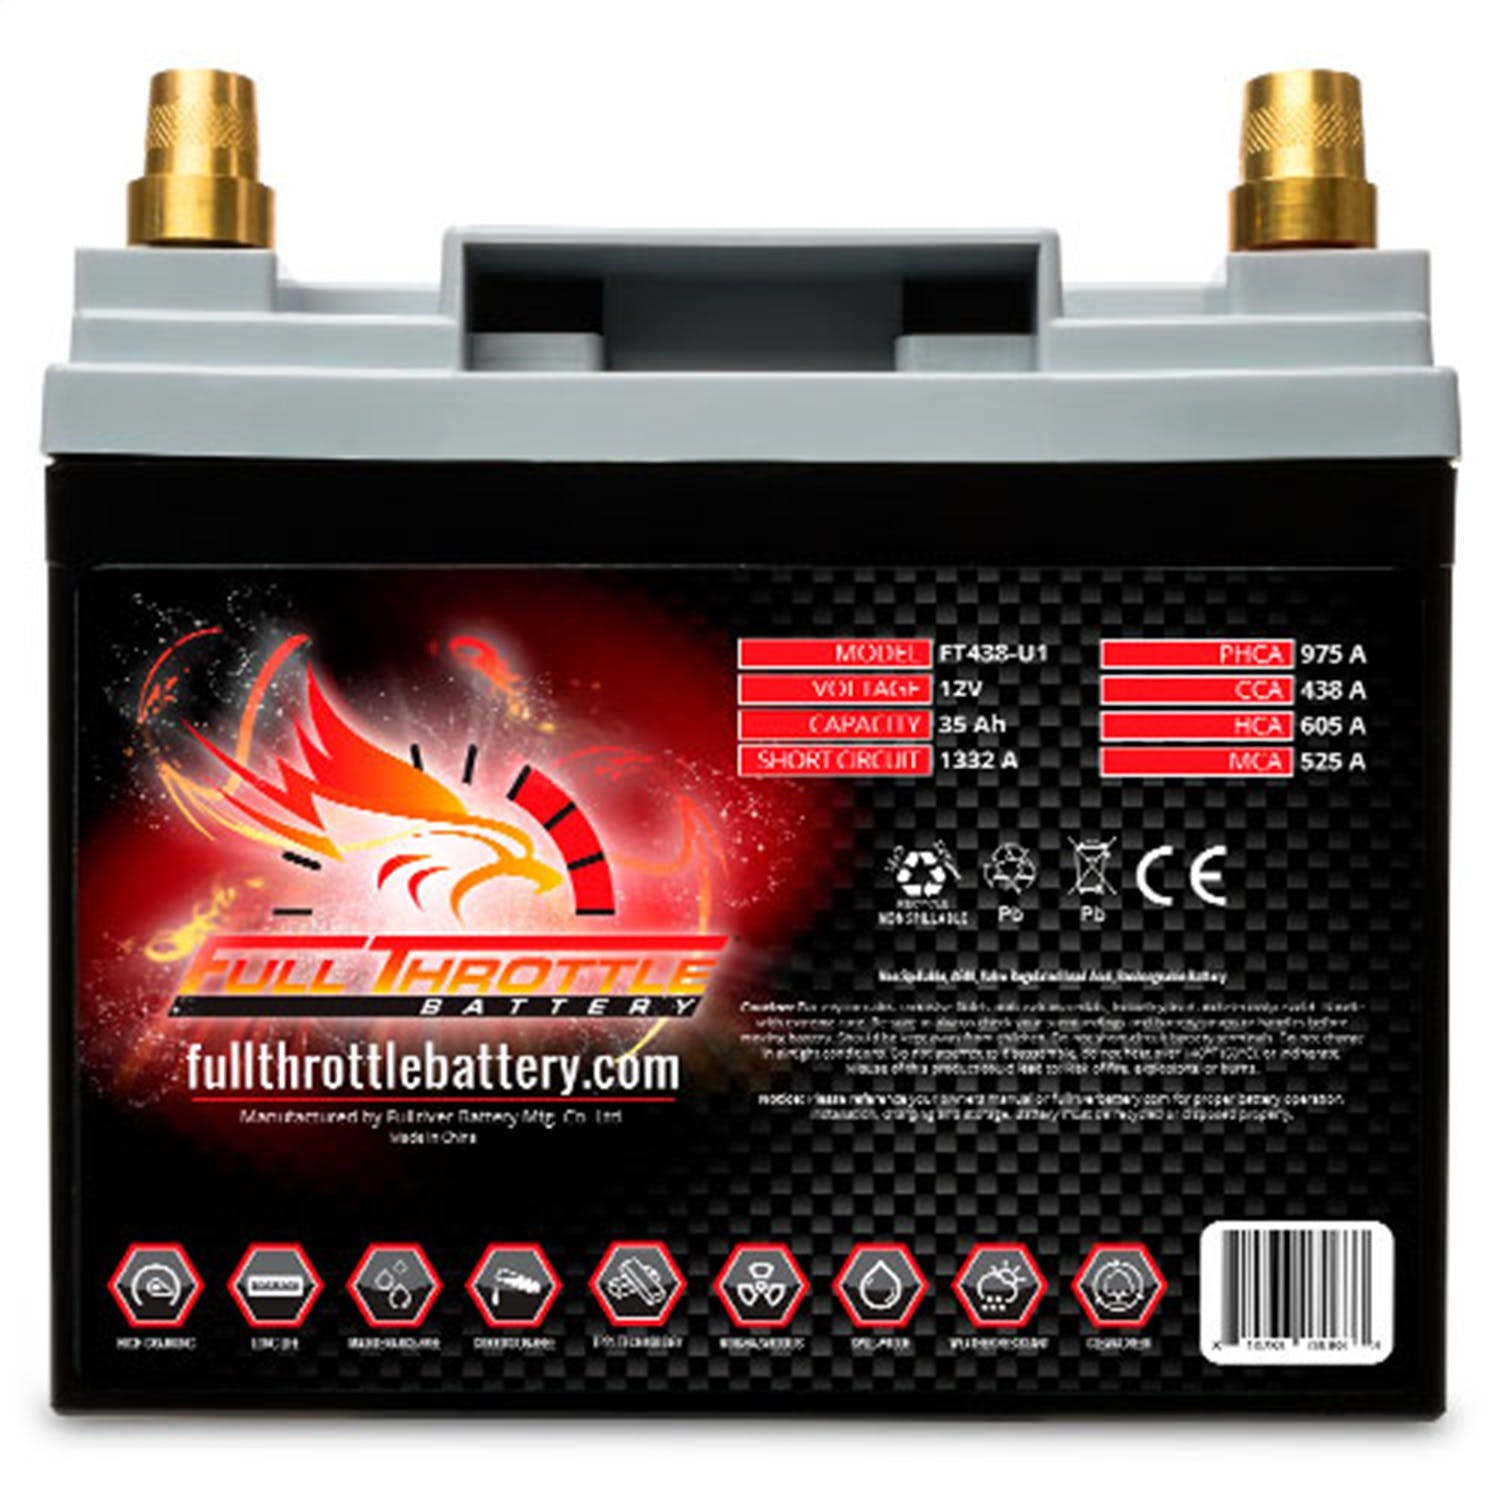 Fullriver Battery FT438-U1 Full Throttle 12V Automotive Battery